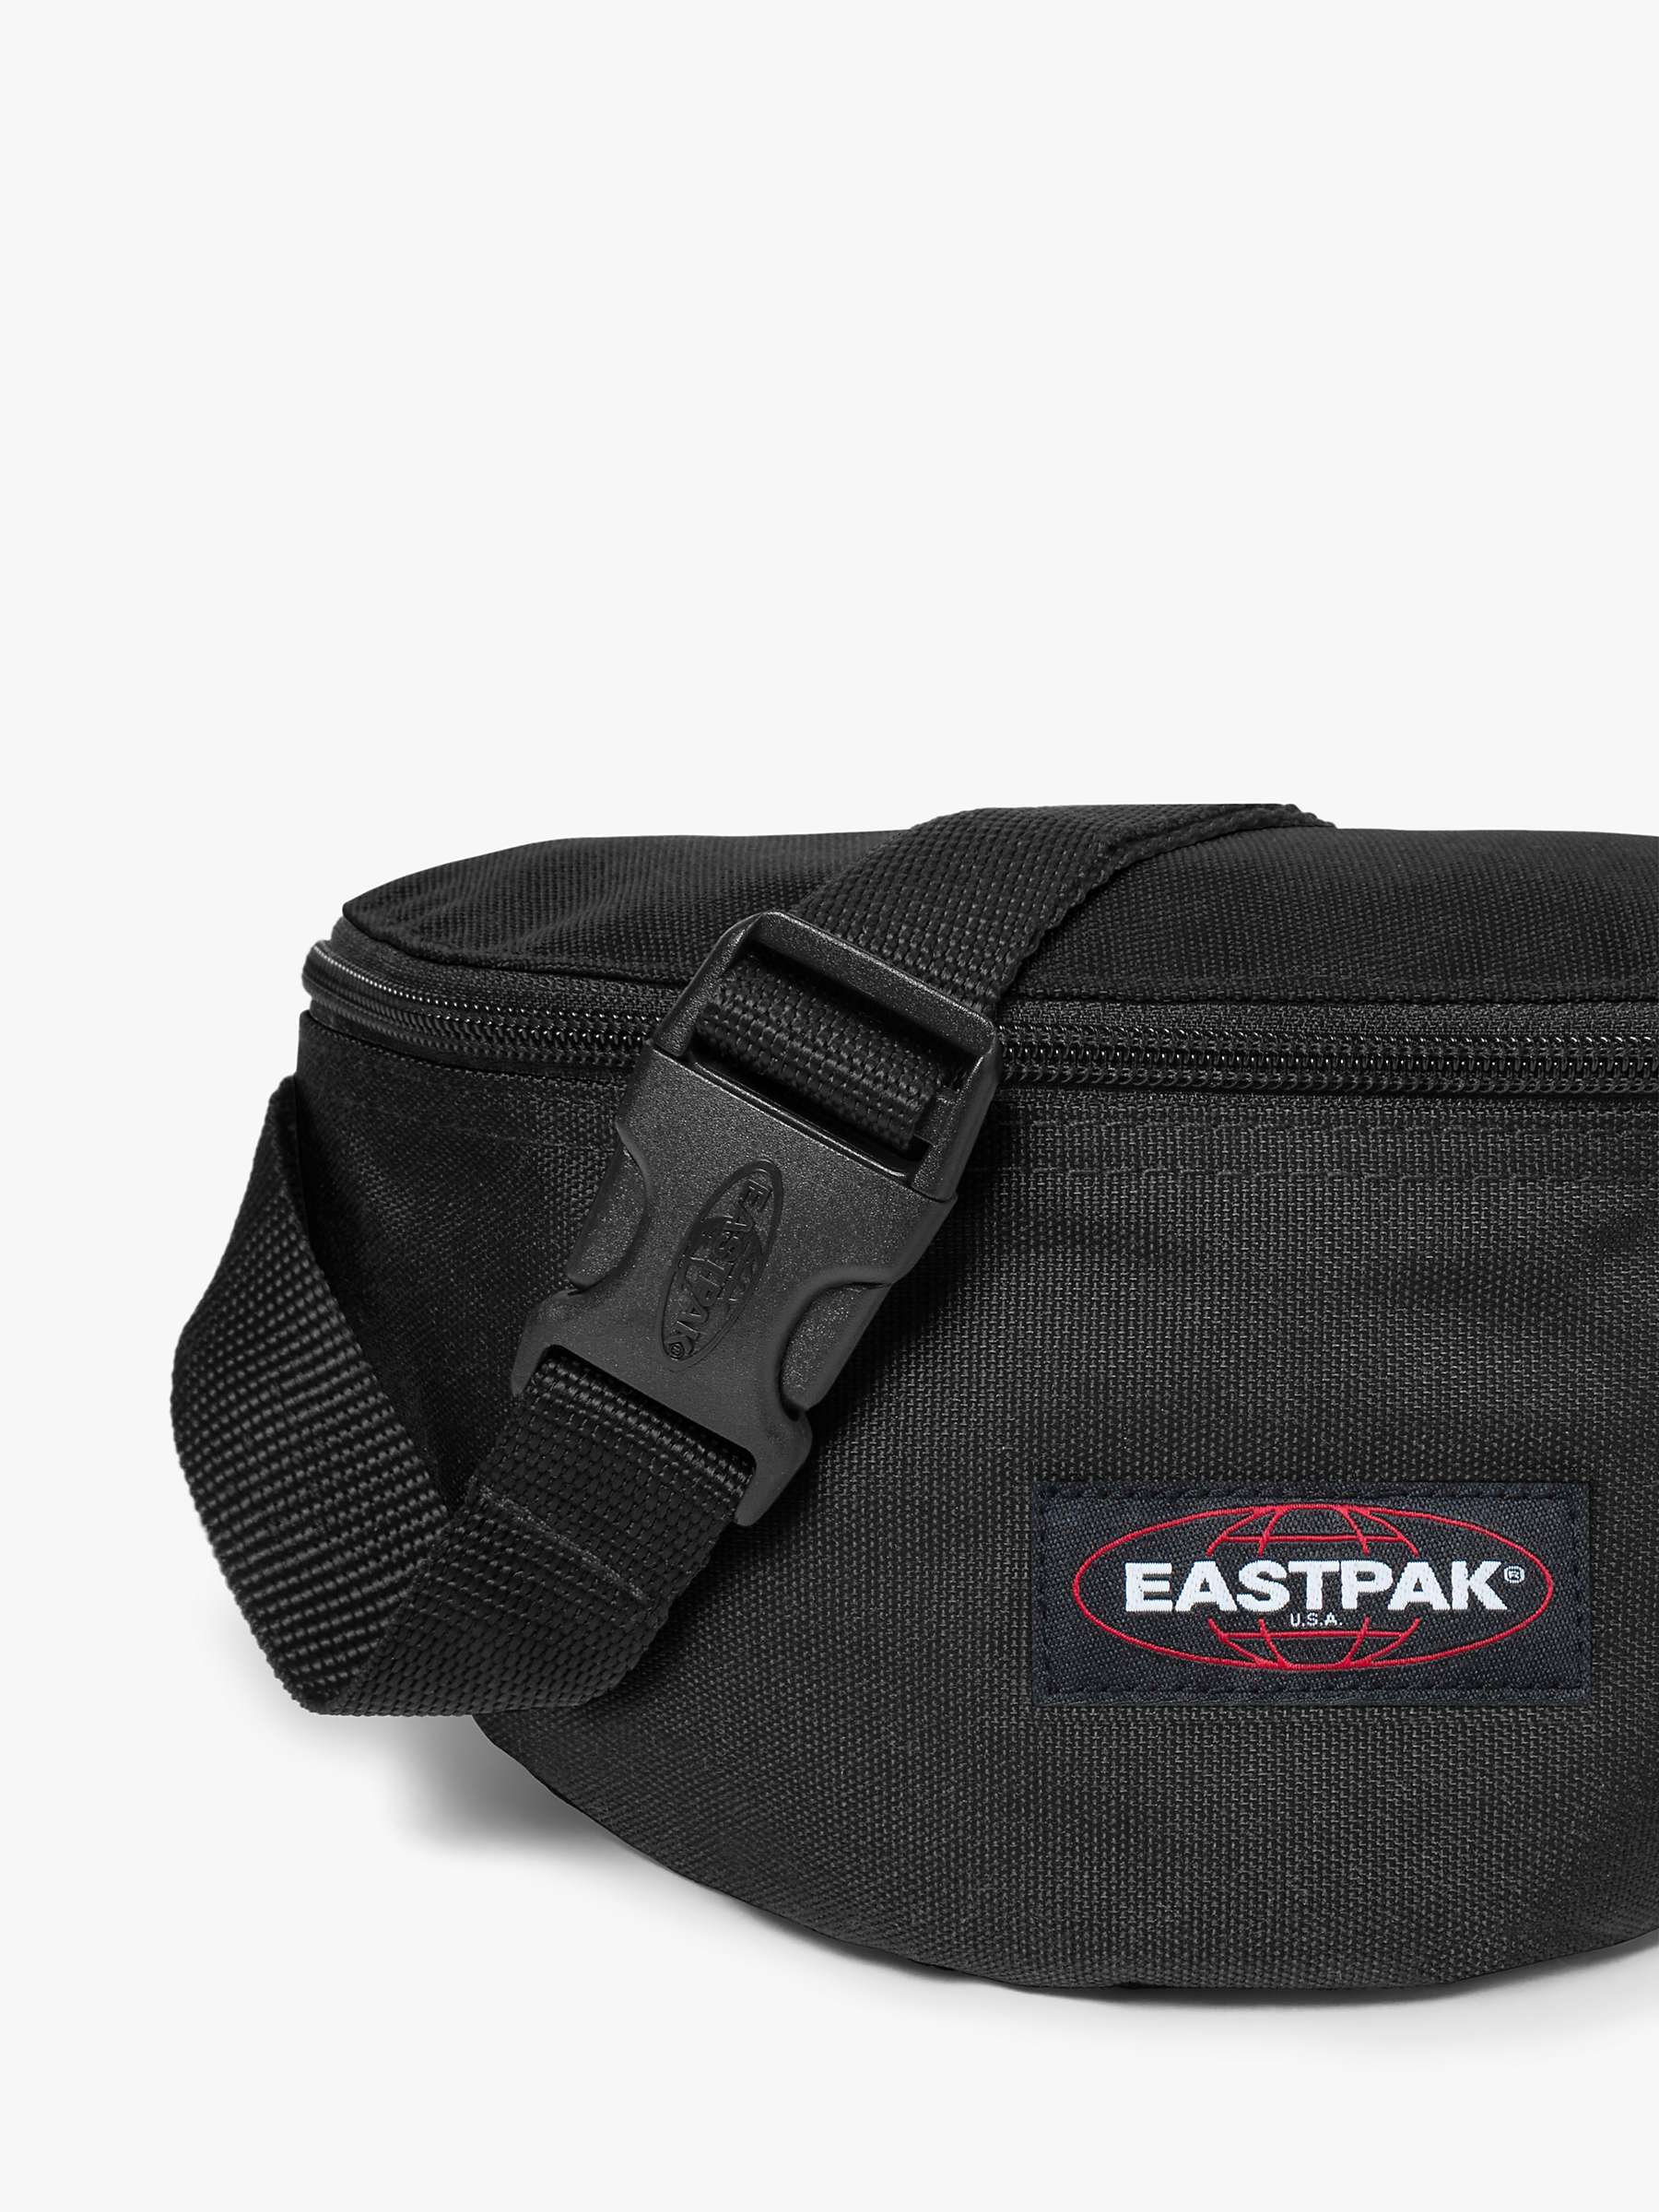 Buy Eastpak Springer Bum Bag Online at johnlewis.com